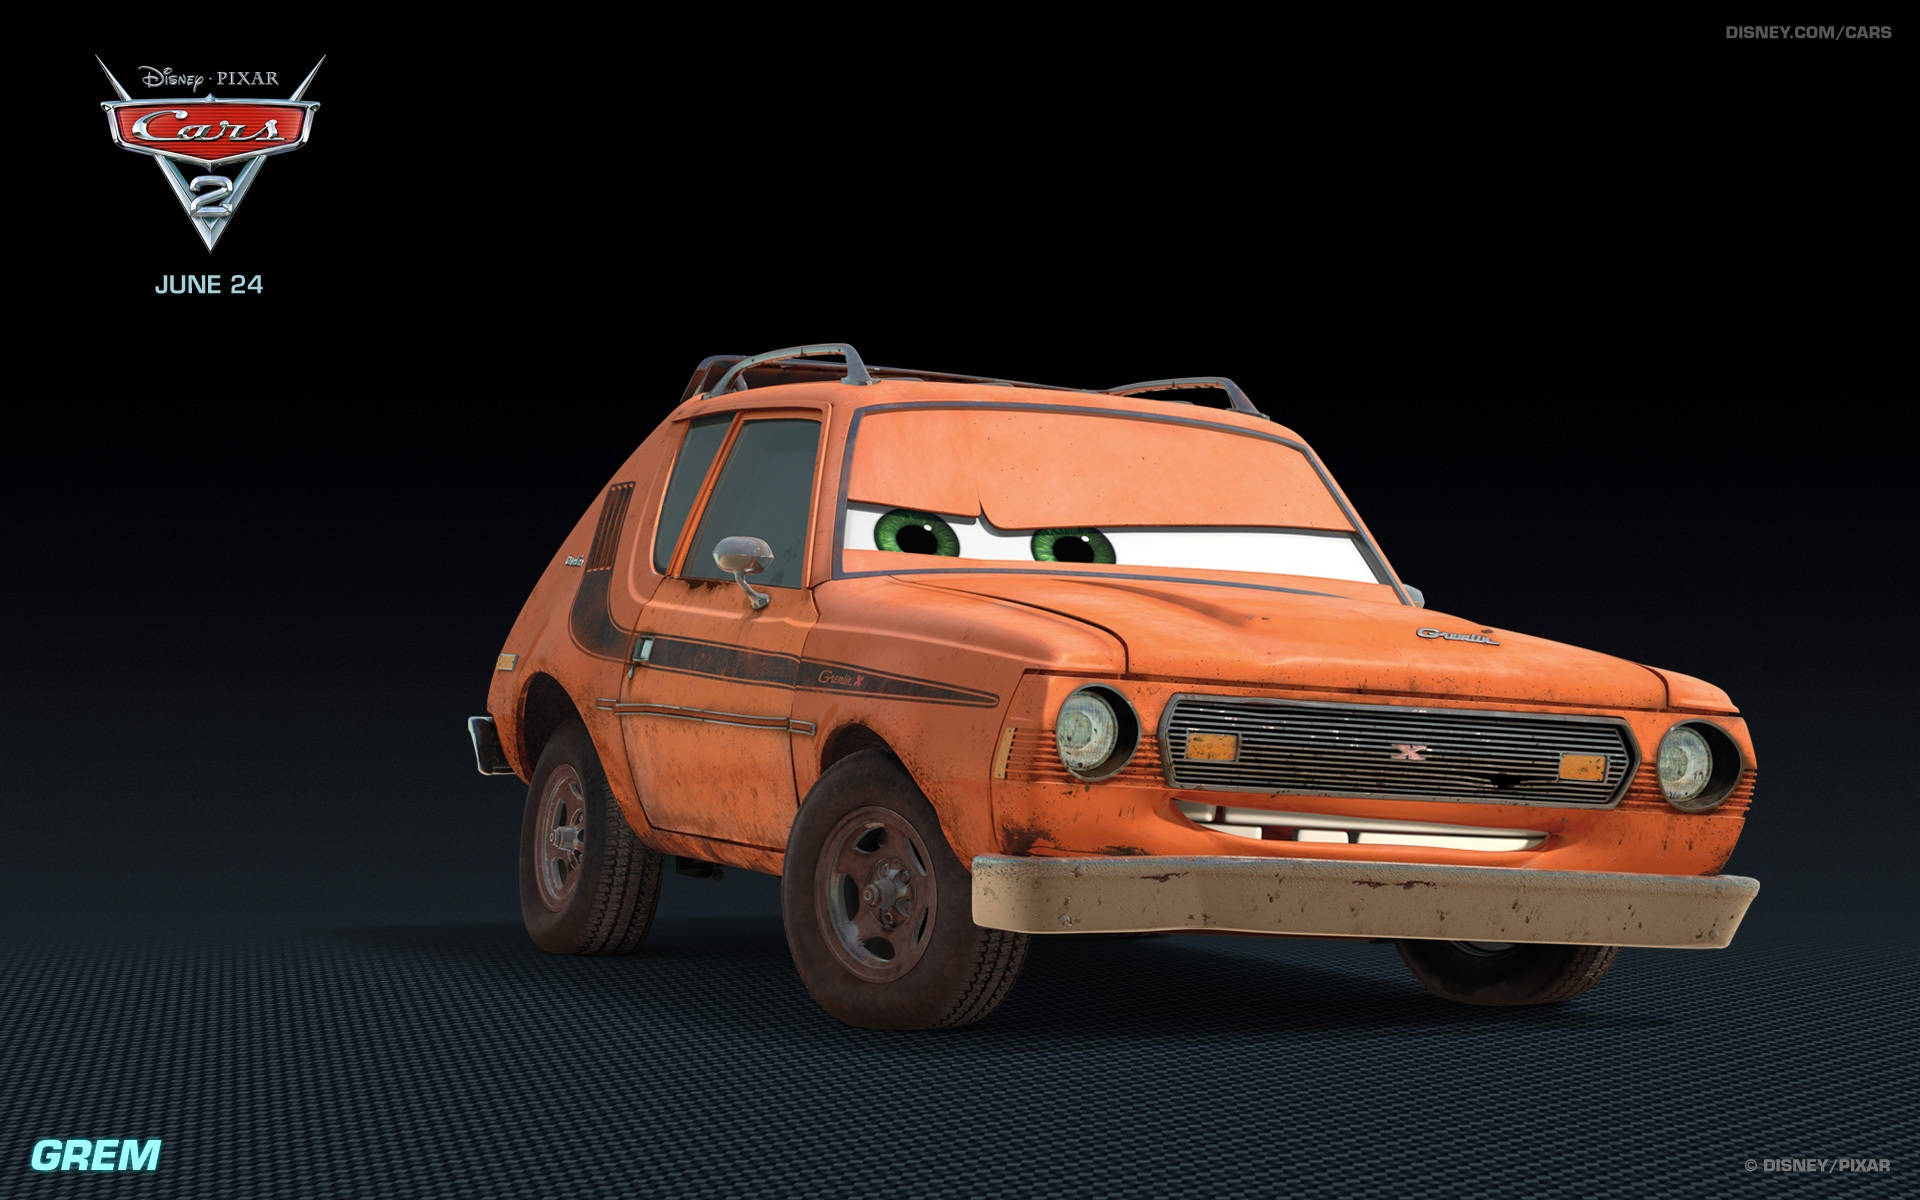 Disney Pixar Grem Cars 2 Background